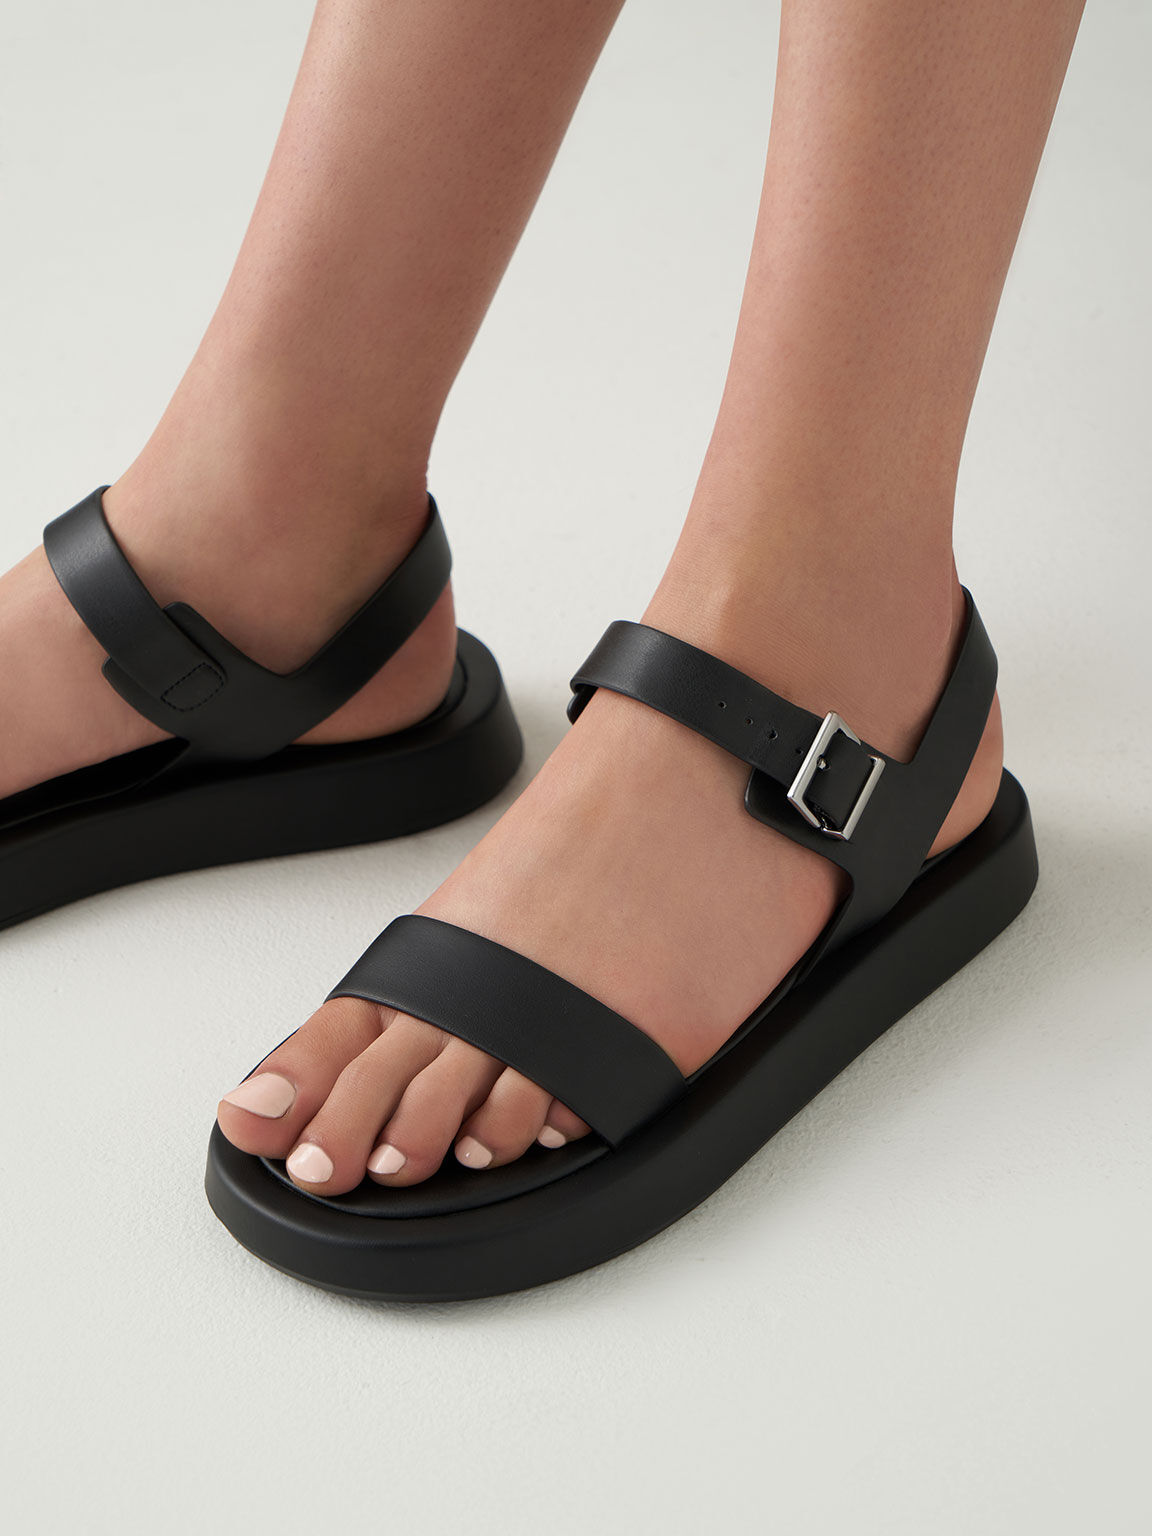 Buckled Ankle Strap Flatform Sandals, Black, hi-res